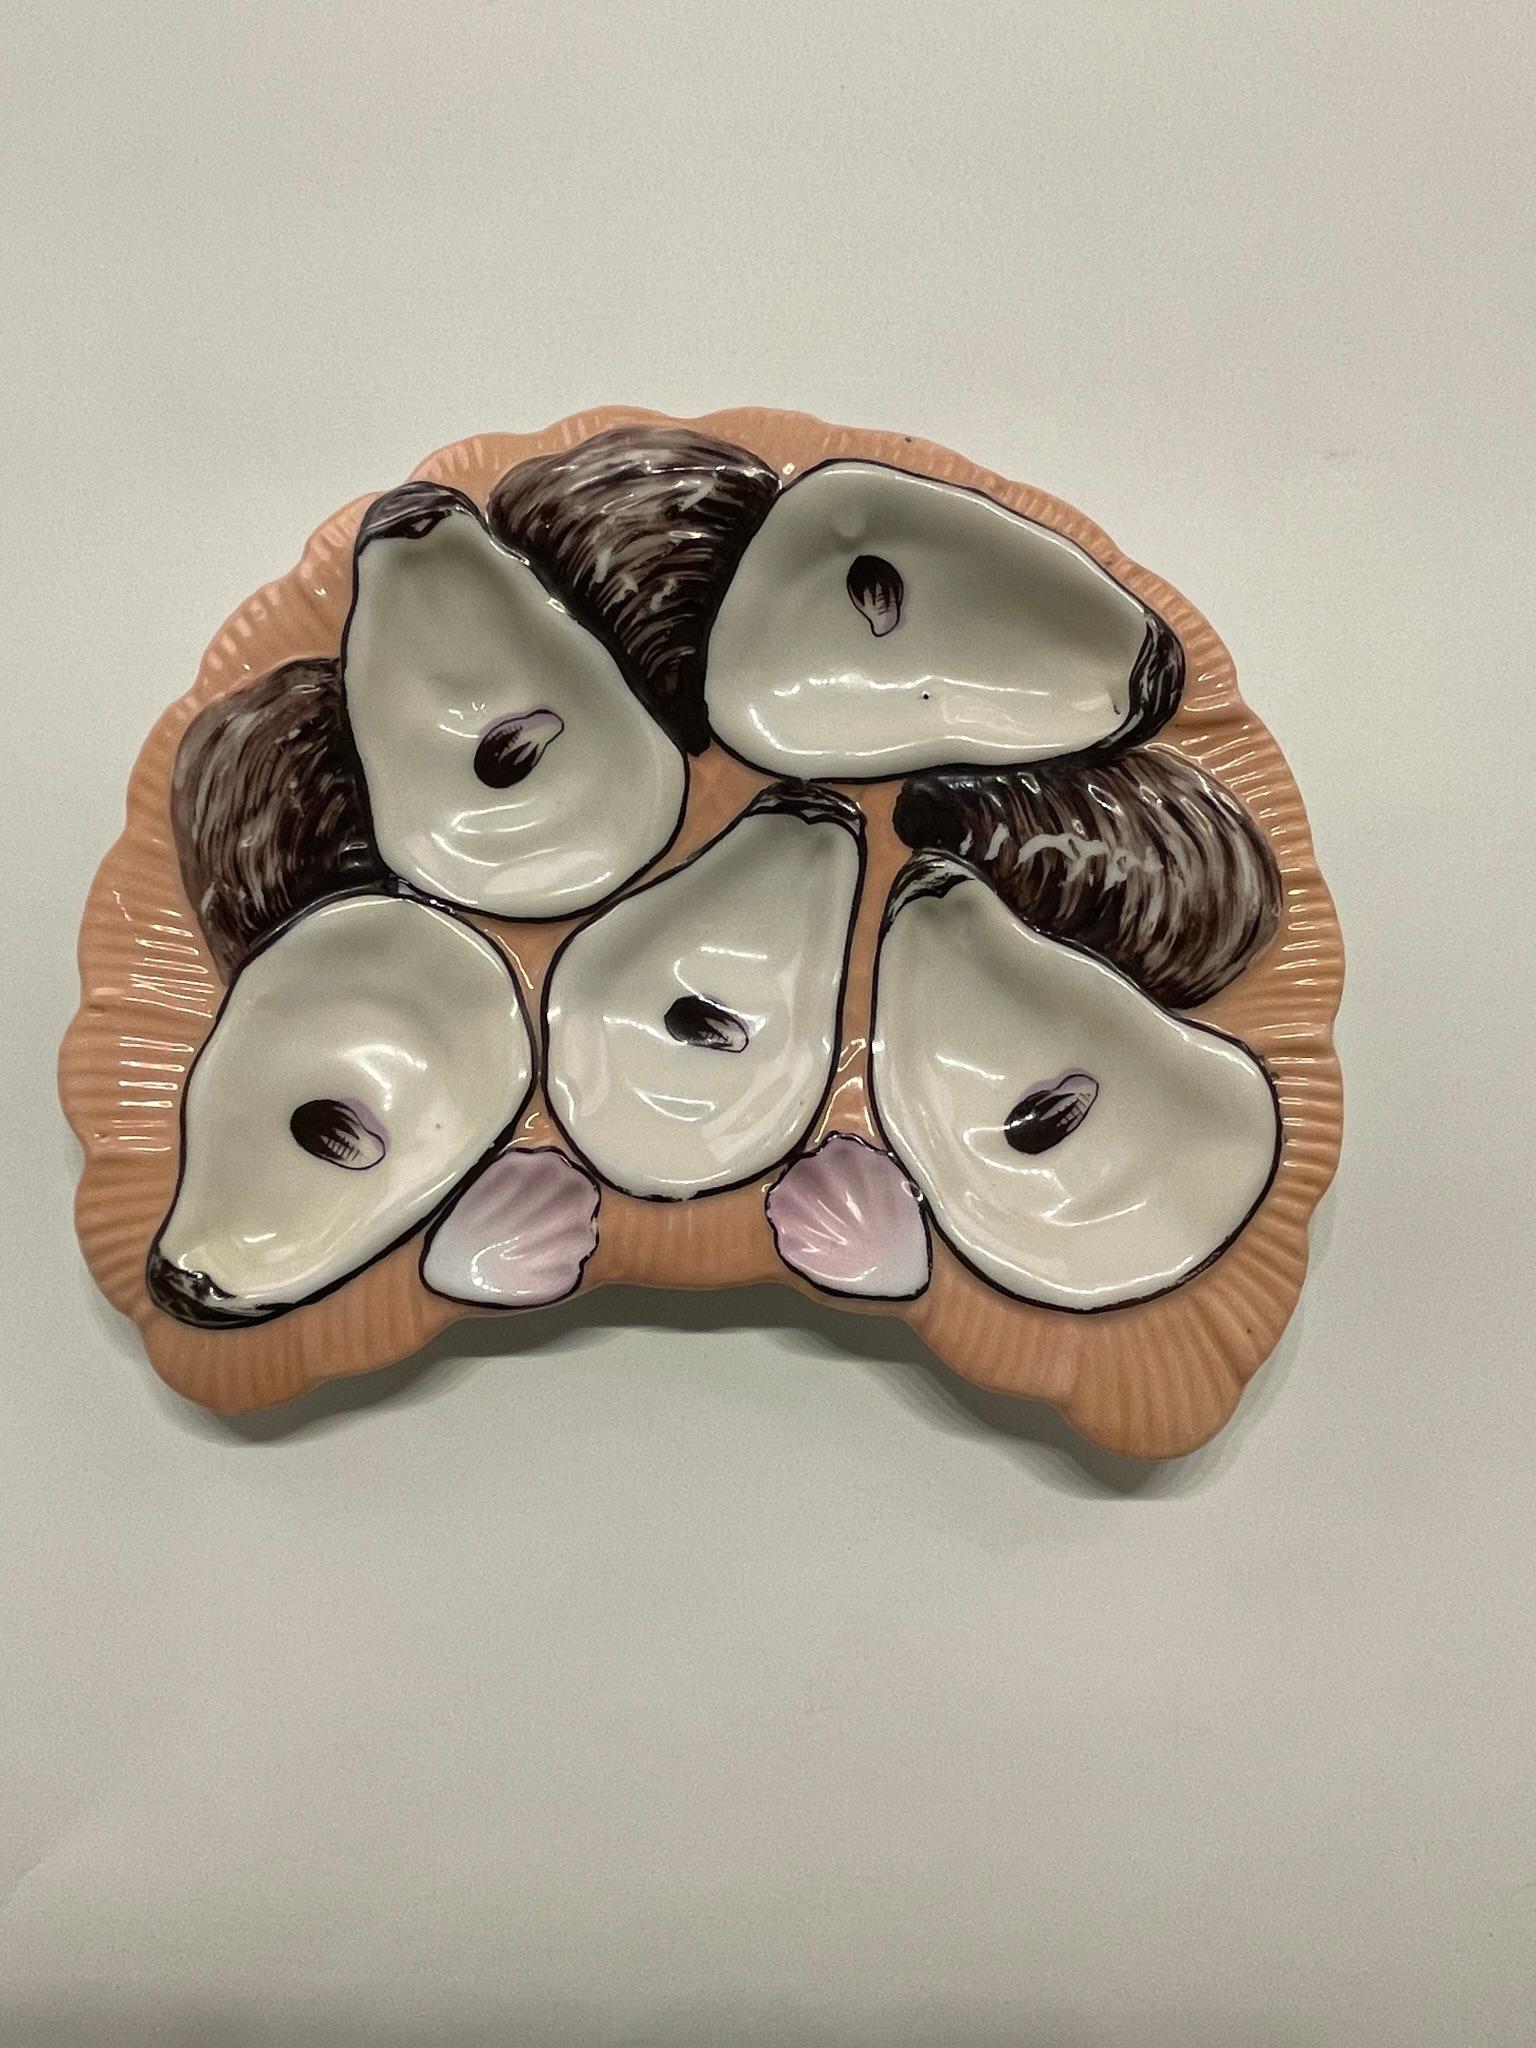 Ein französischer Porzellan-Austernteller mit 5 Austernschalen in gutem Zustand mit einem Chip am hinteren Rand. Die Platte ist 8,75